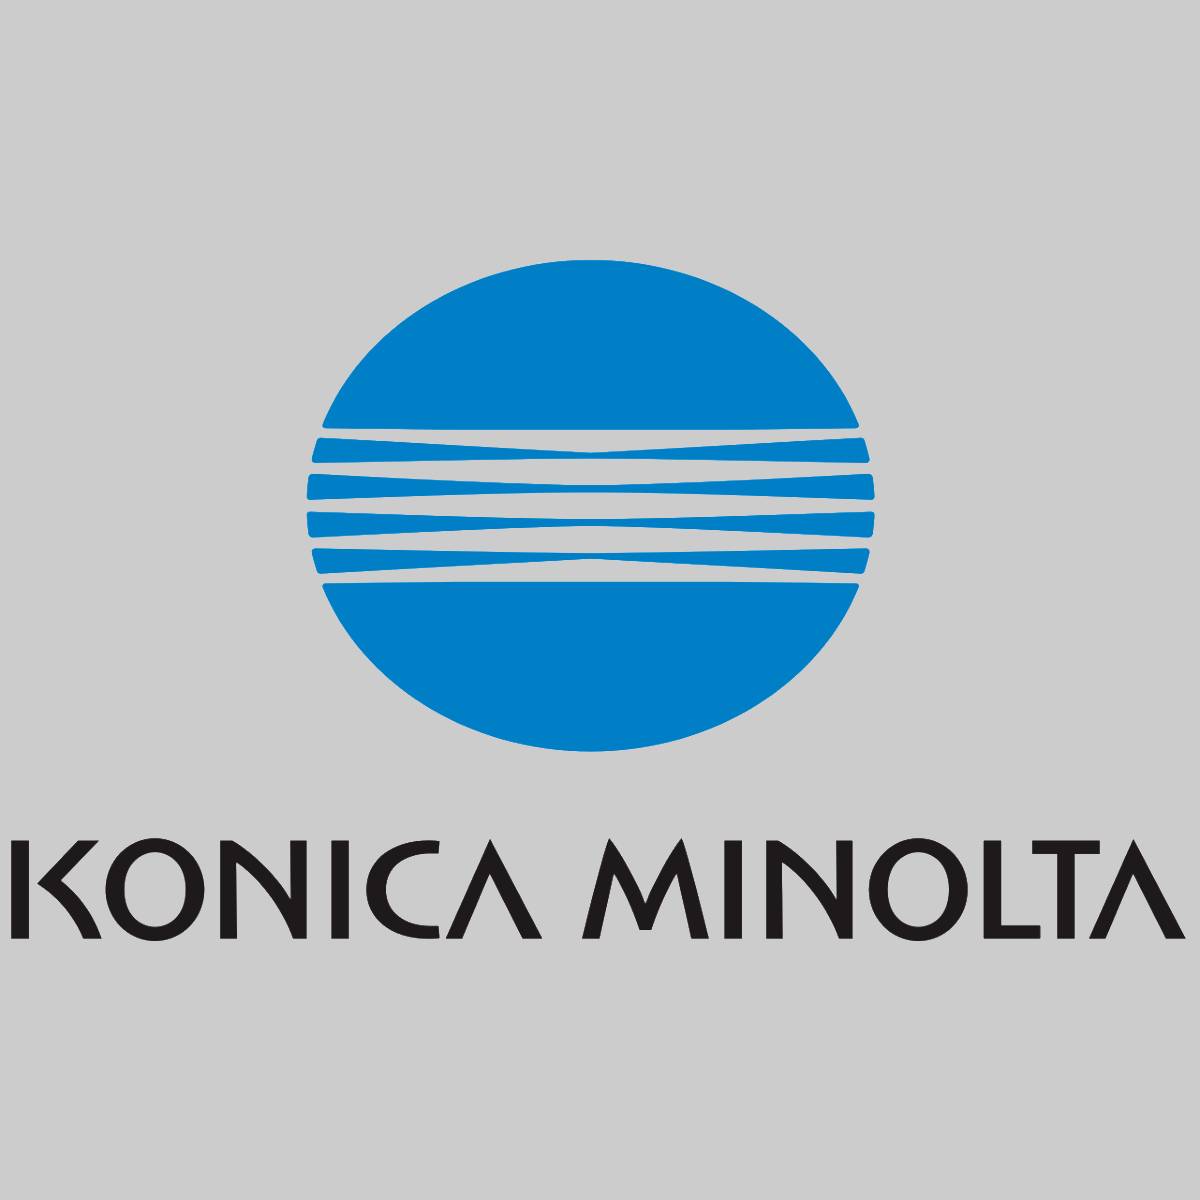 "Toner d'origine Konica Minolta jaune 1710490-002 pour MagiColor 3100 PS nouveau OVP^